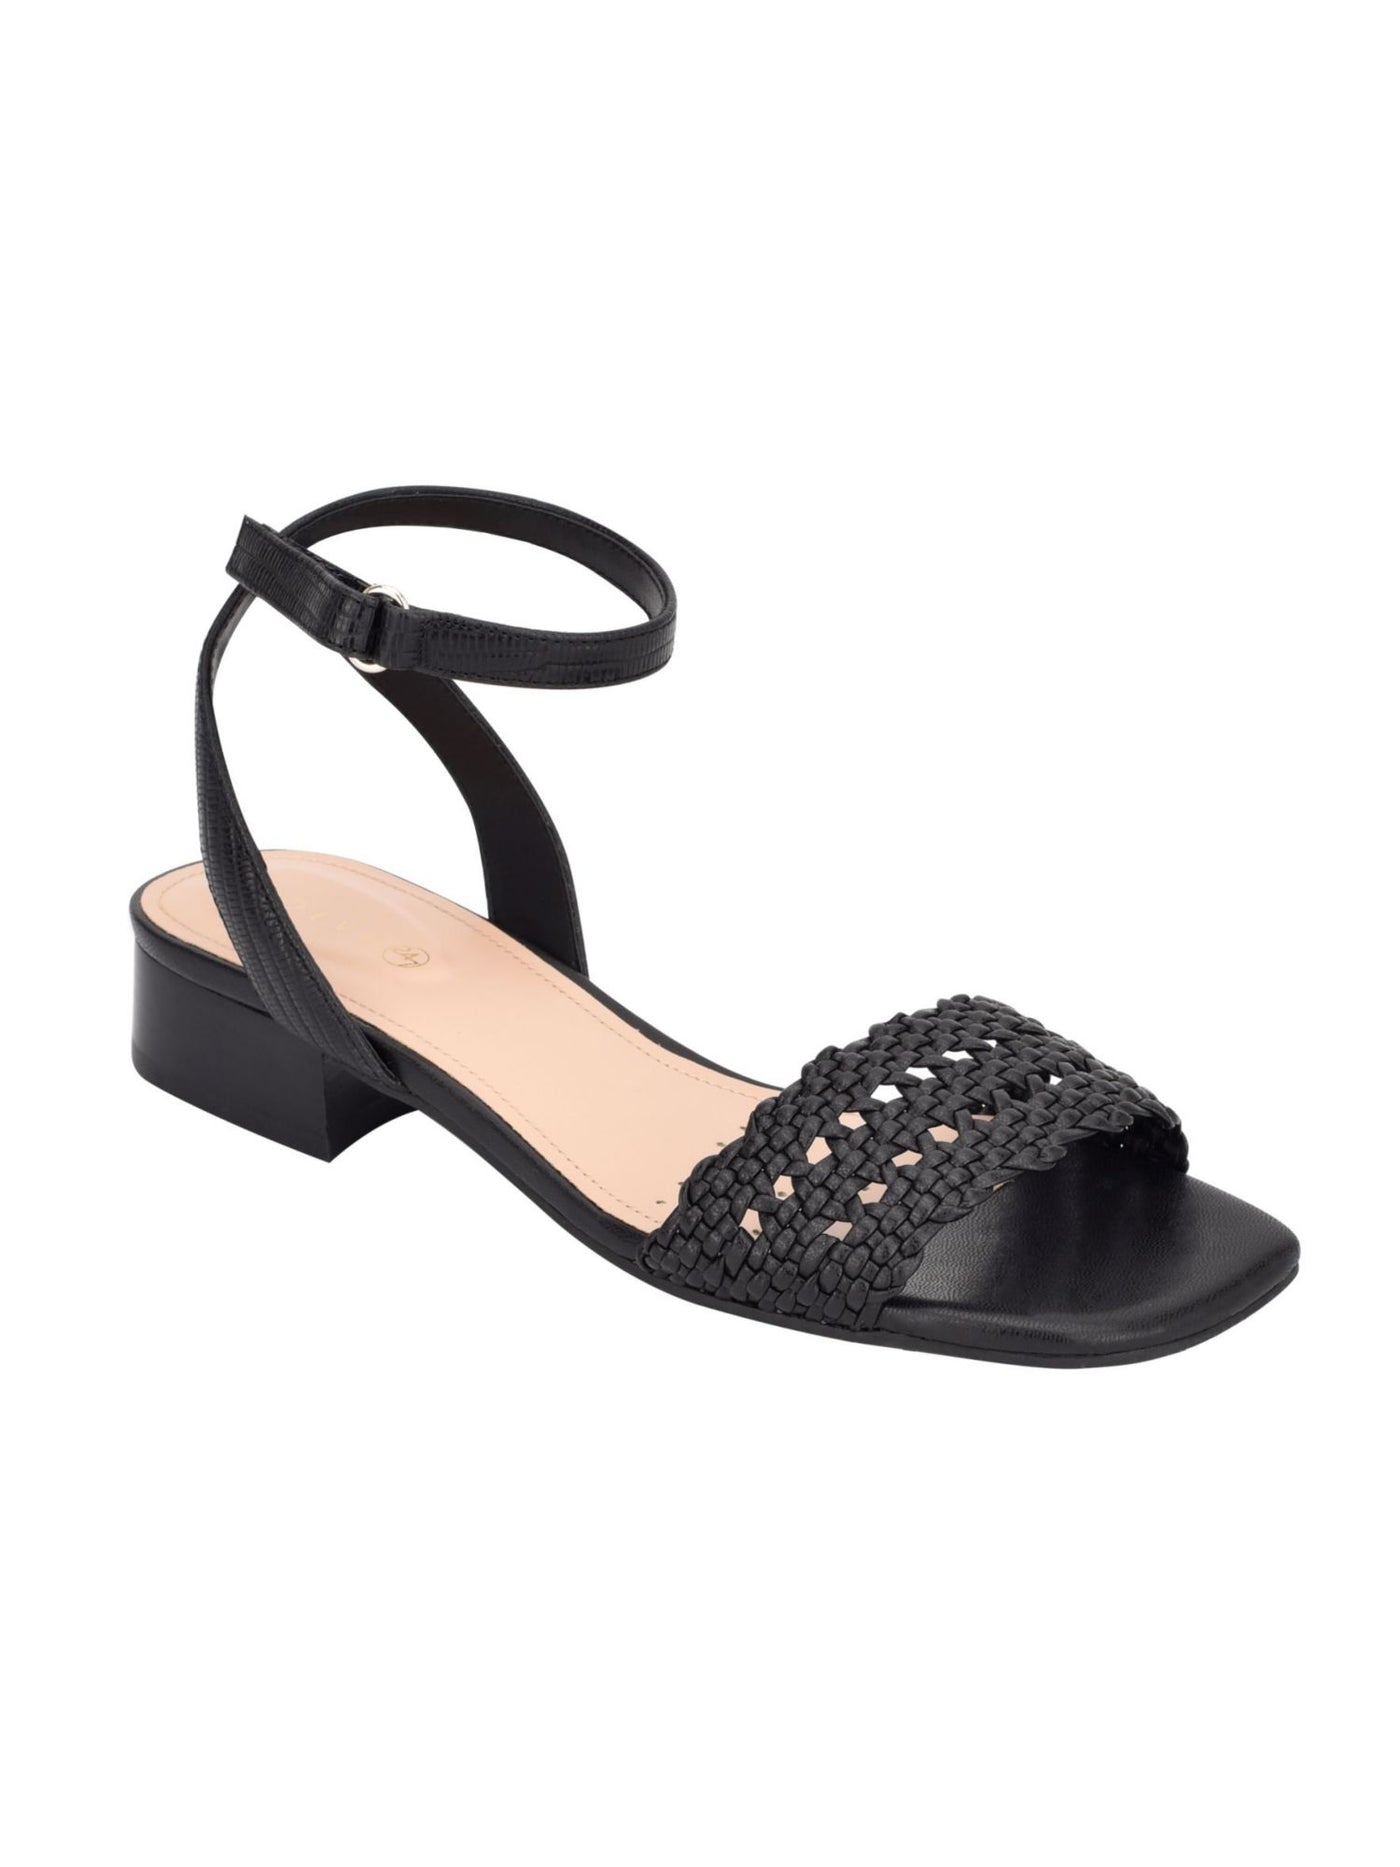 EVOLVE Womens Black Adjustable Strap Comfort Ingrid2 Open Toe Sandals Shoes 9.5